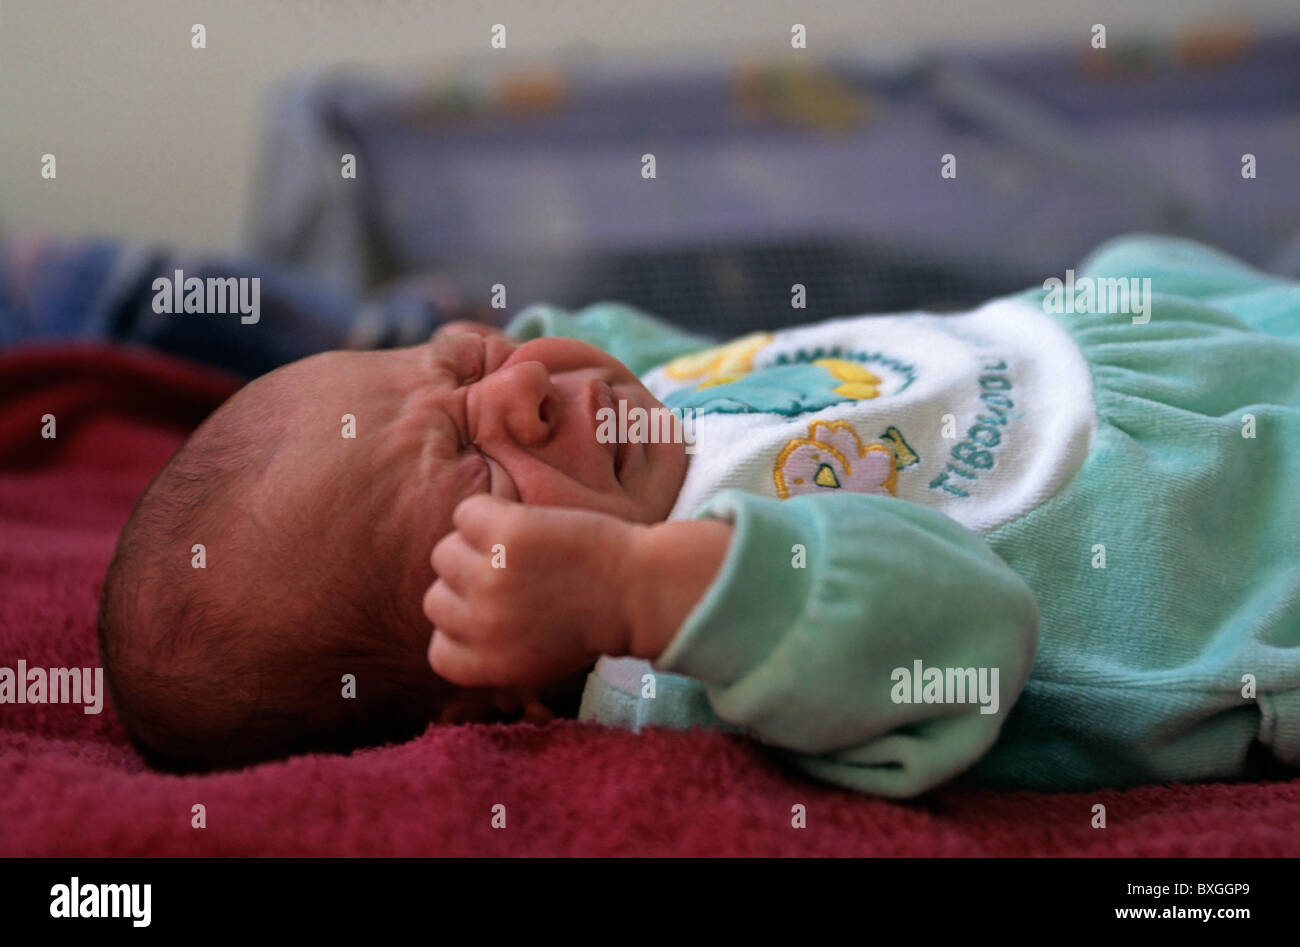 Newborn baby crying. Stock Photo